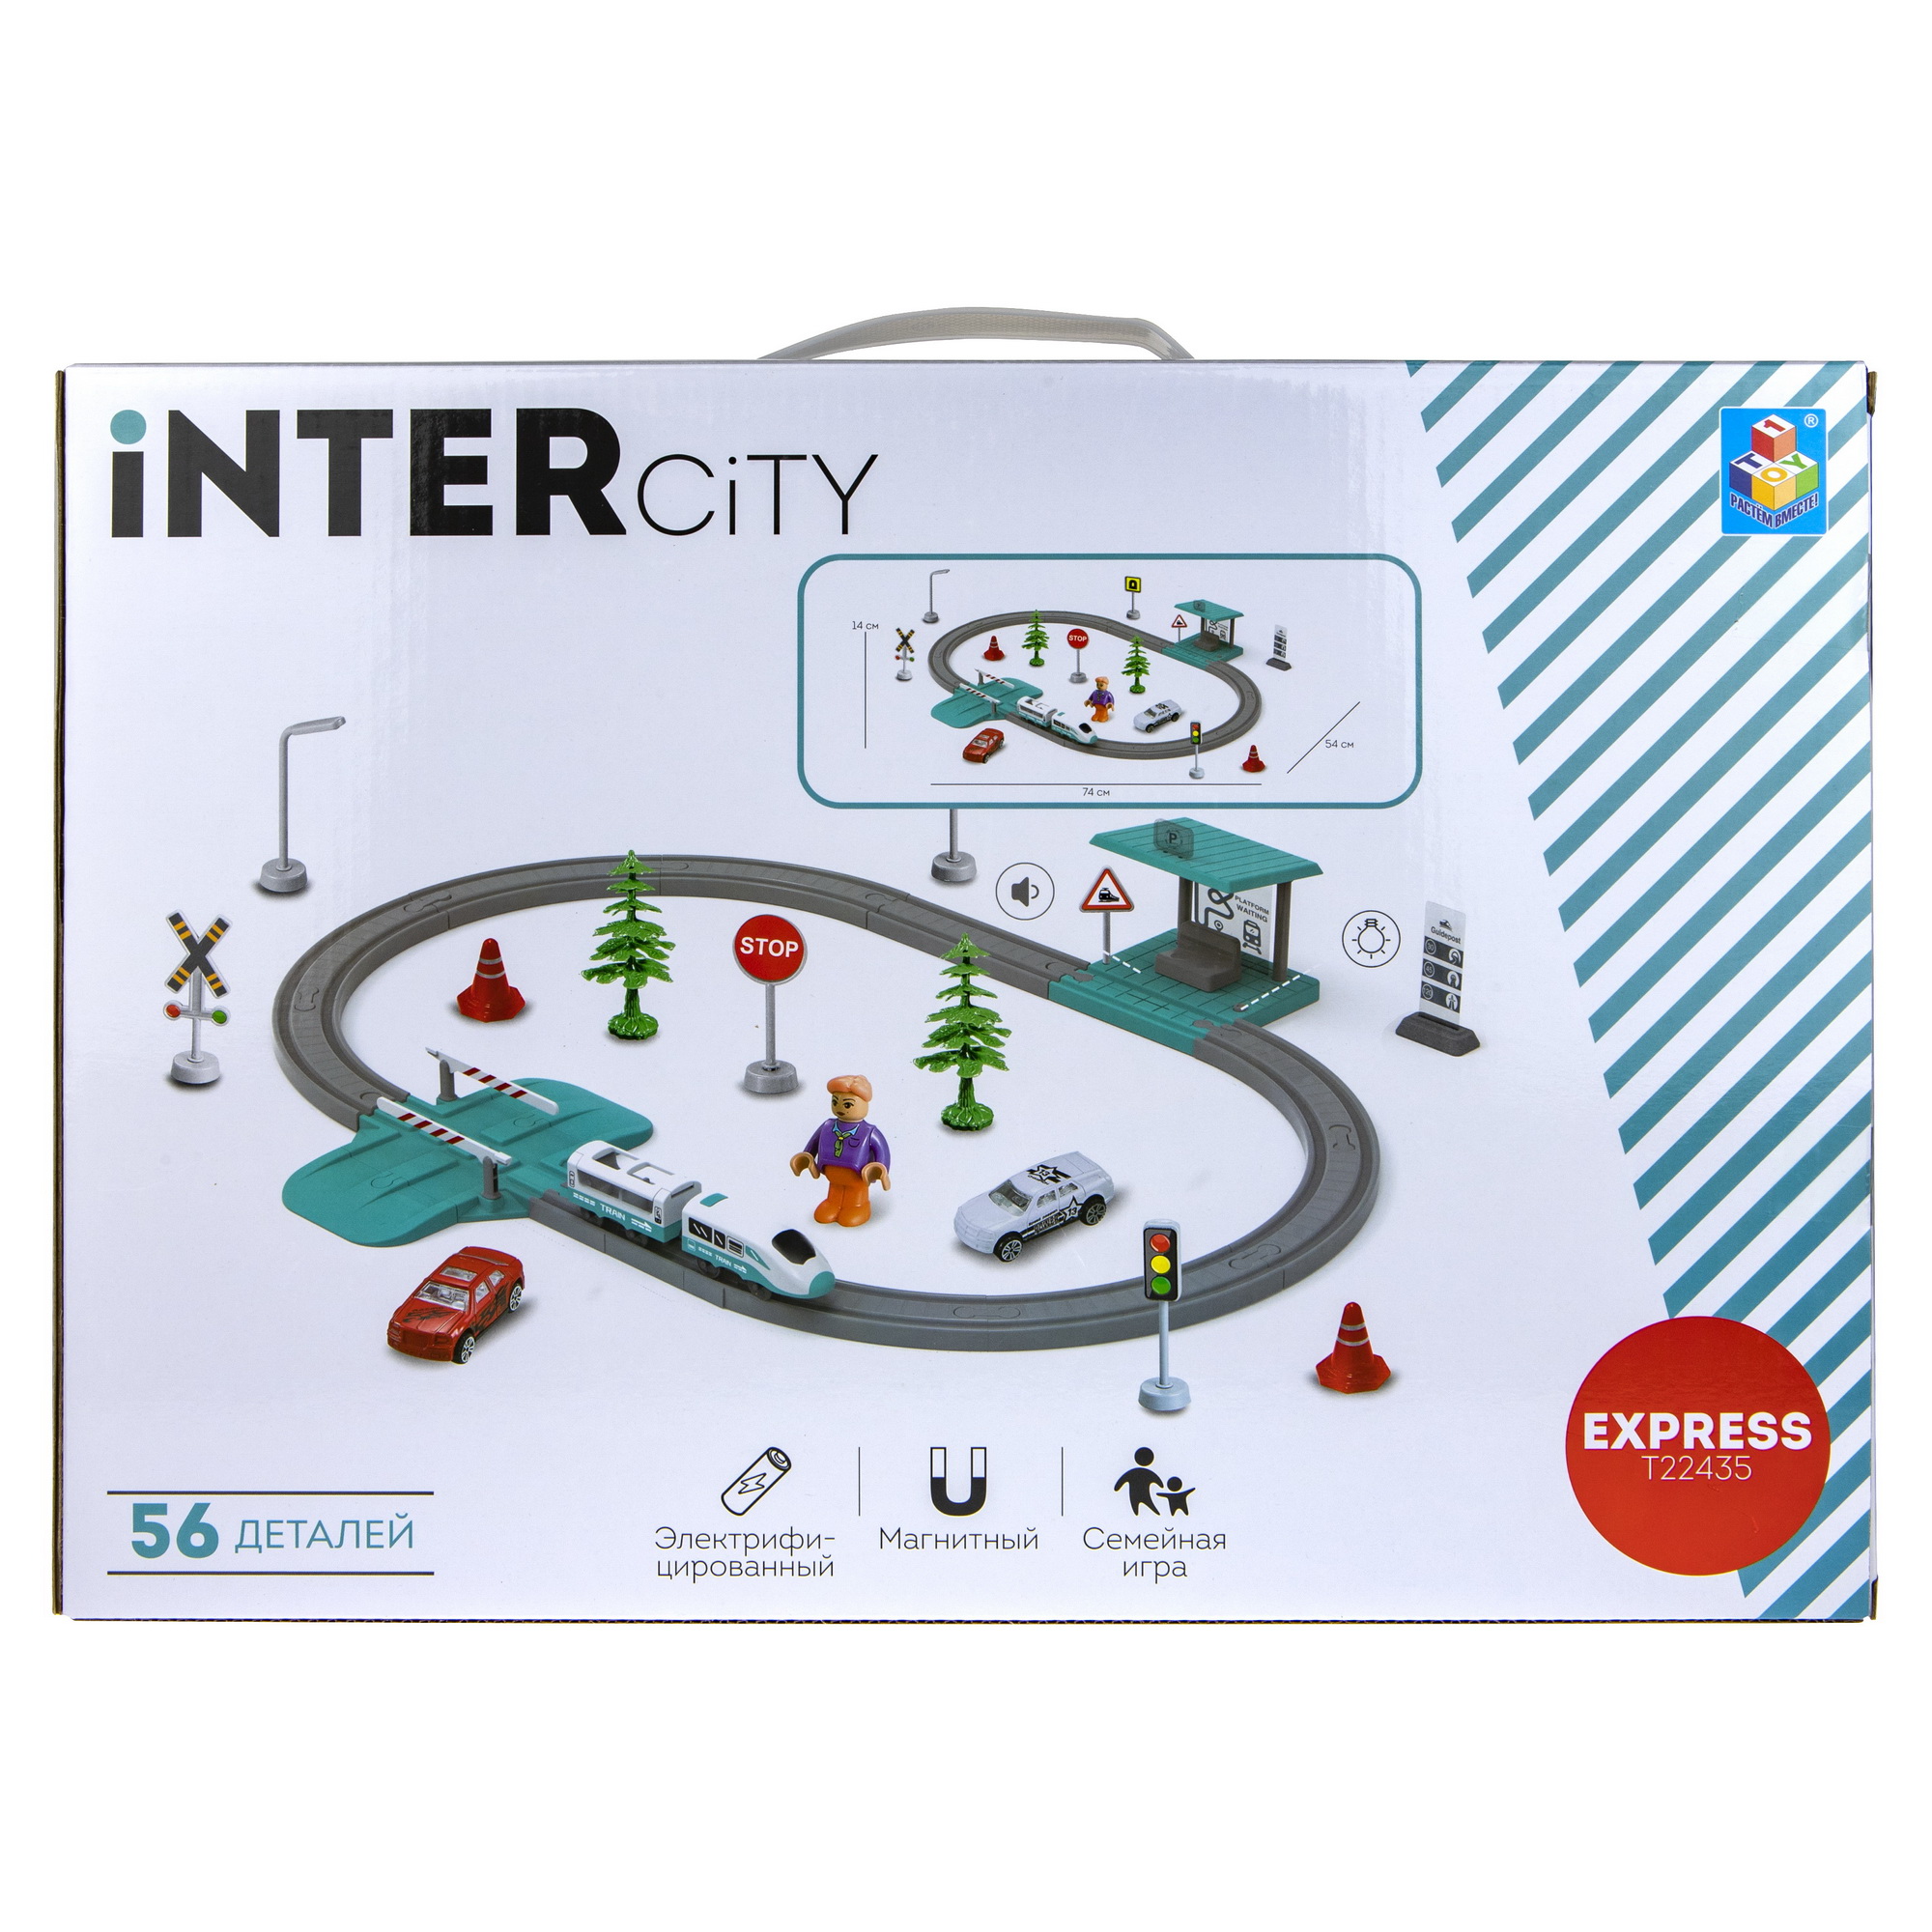 Игровой набор InterCity Express Городок со световыми и звуковыми эффектами Т22435 - фото 9